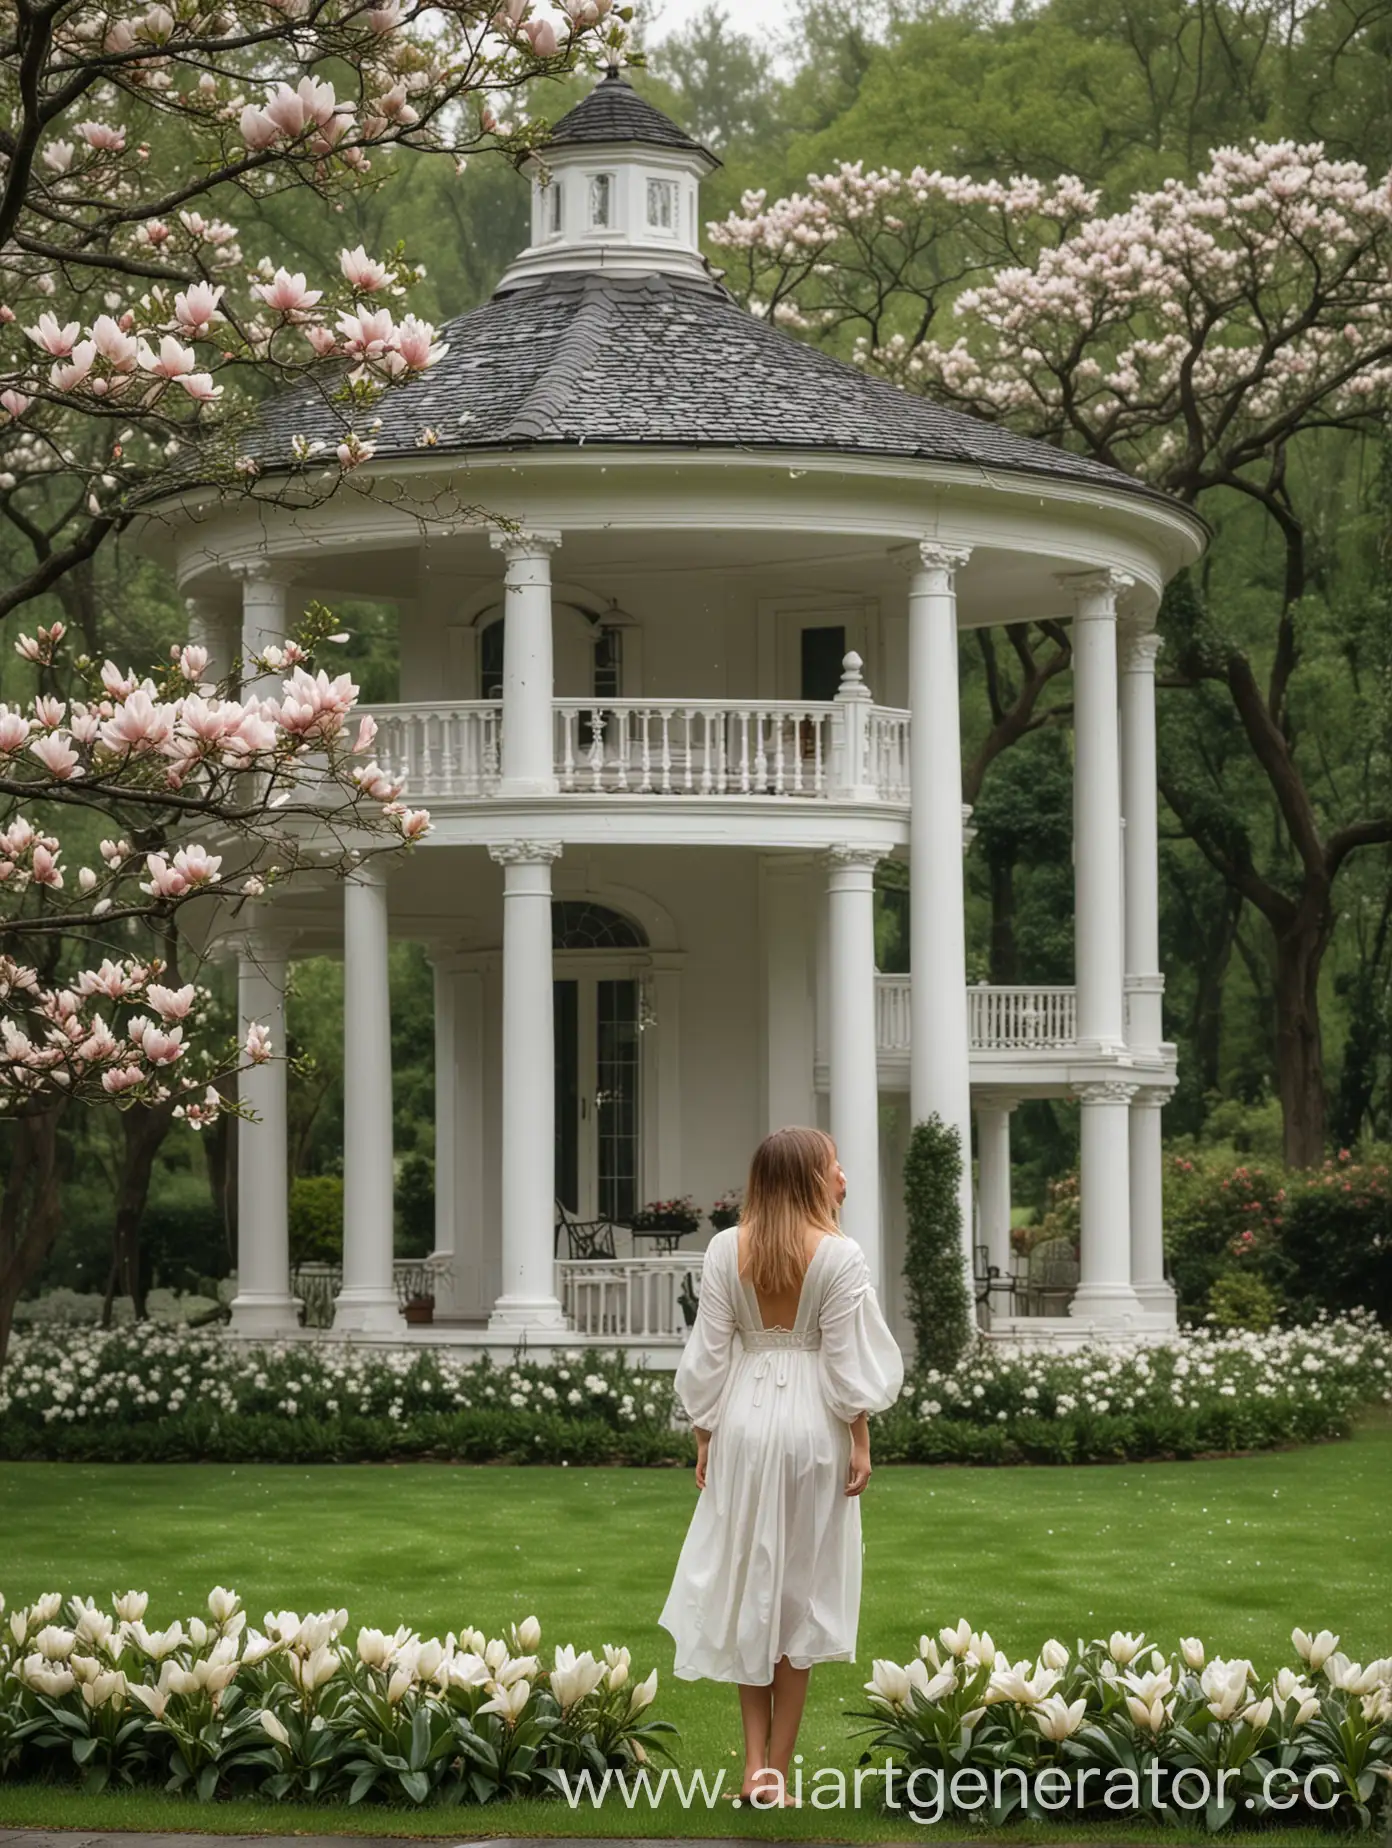 Tranquil-Scene-Magnolia-Blossoms-in-Rain-at-Elegant-Estate